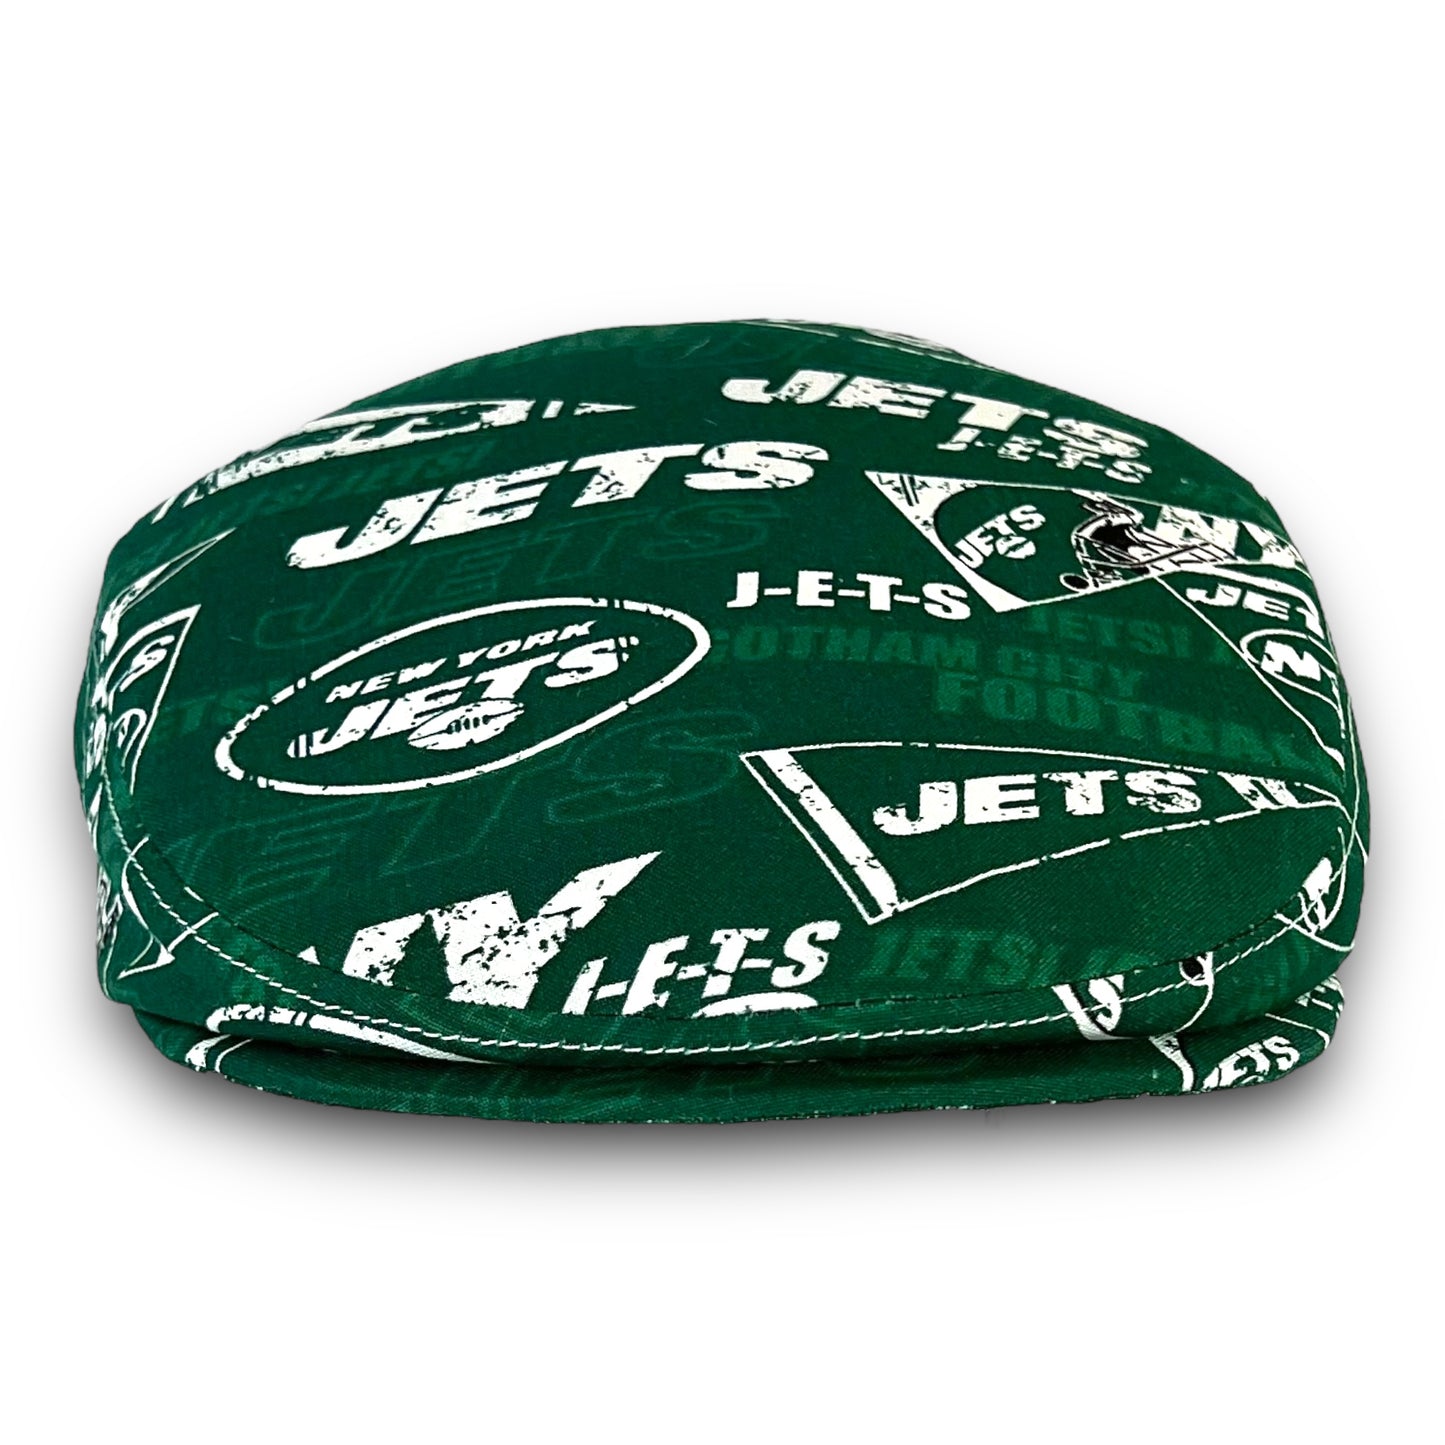 Custom Handmade Jeff Cap in NY New York Jets Logo Print Fabric